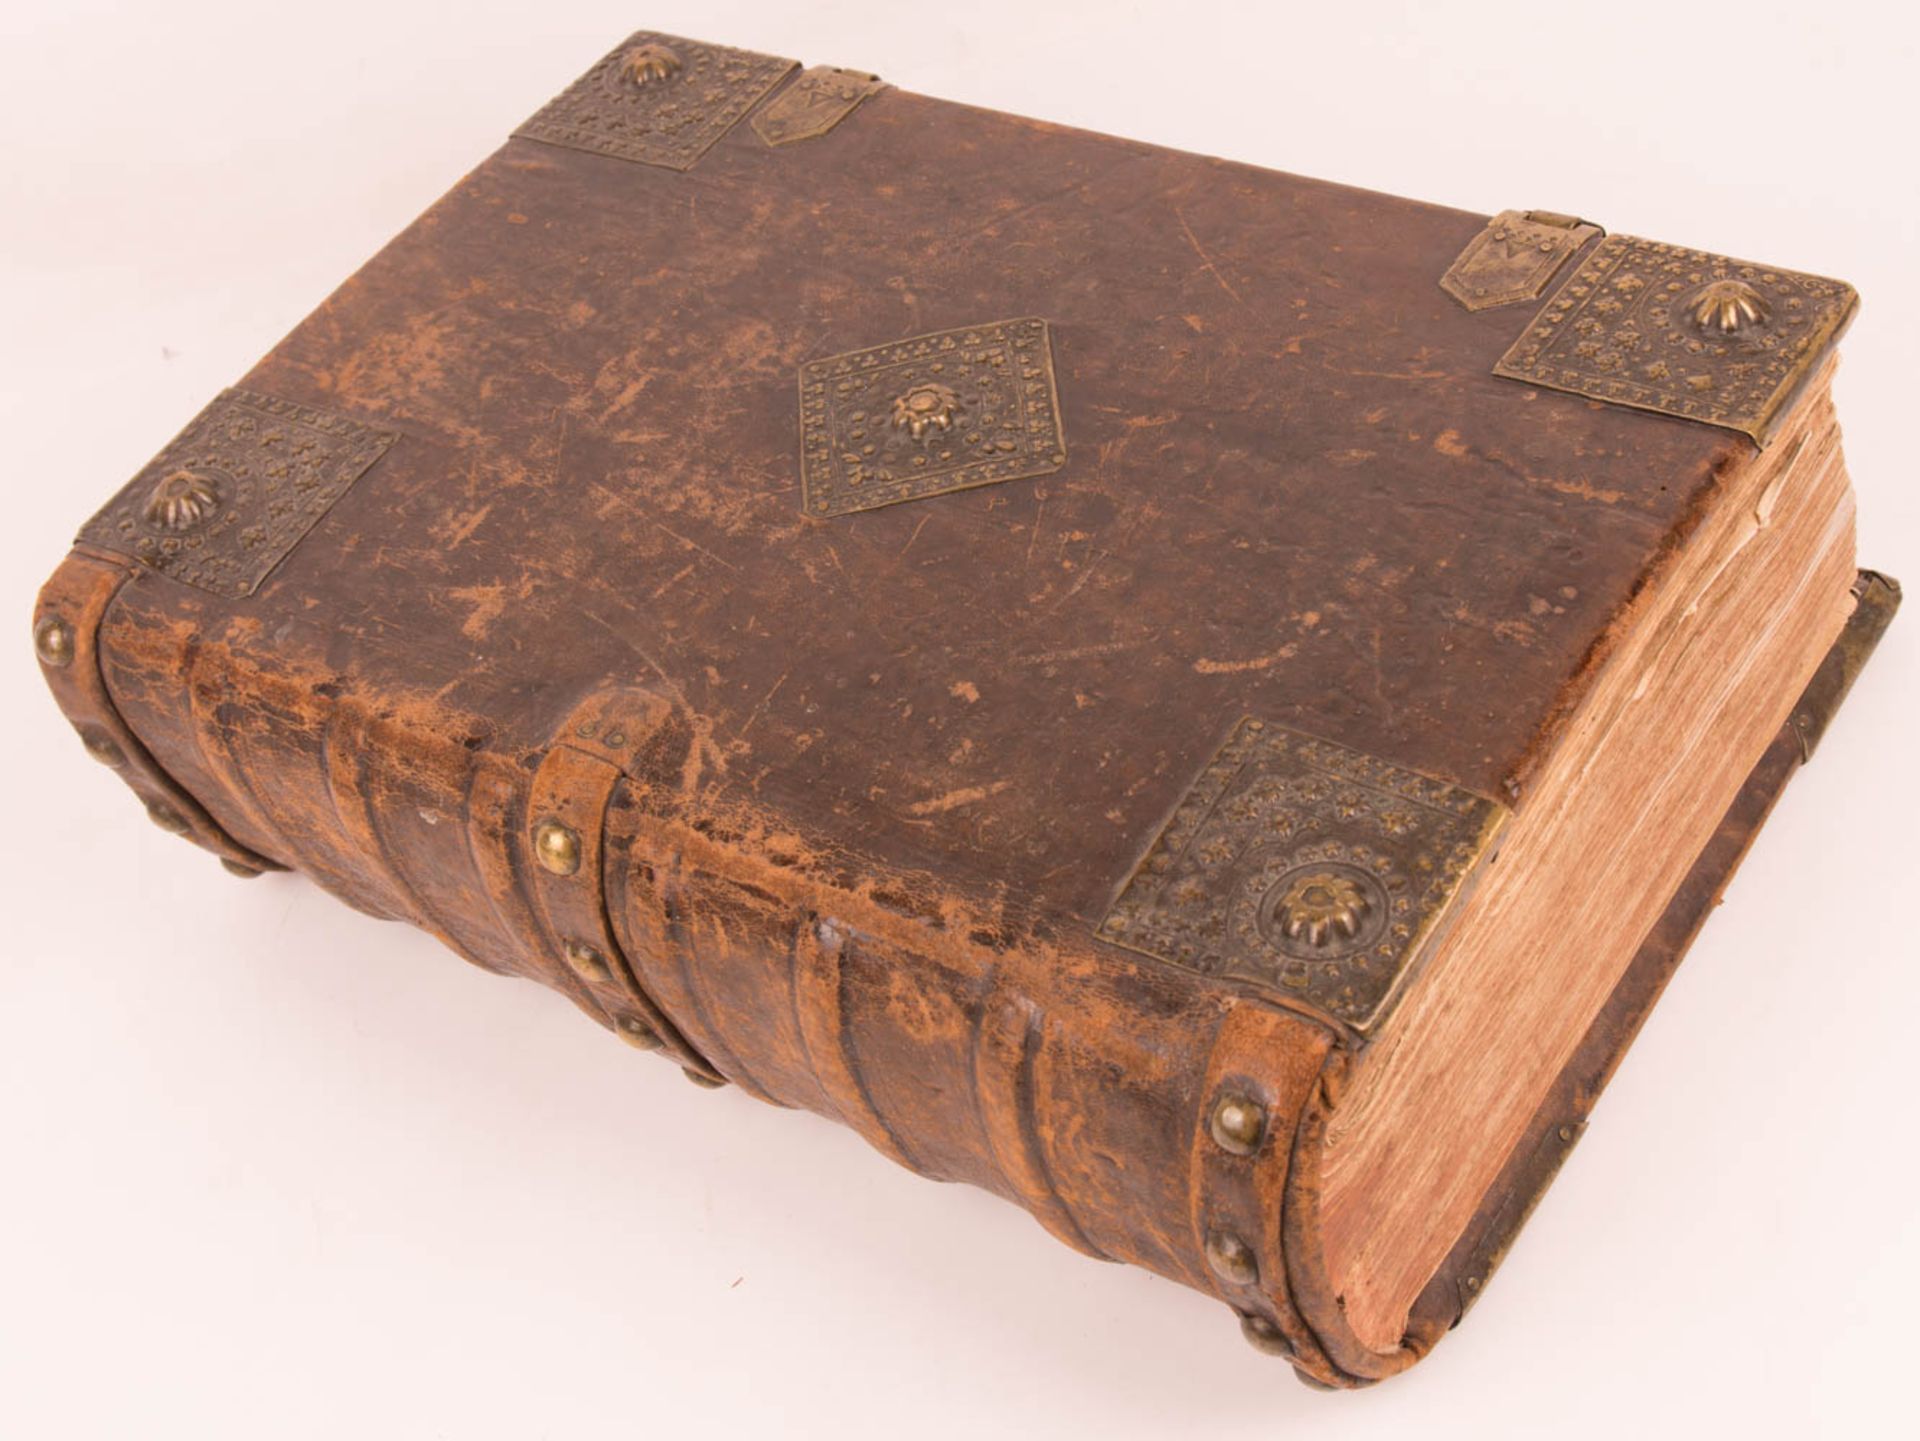 Biblia germanica - Froschauer Bibel, wohl mit Illustrationen von Virgil Solis Zürich, 1536. - Bild 3 aus 23